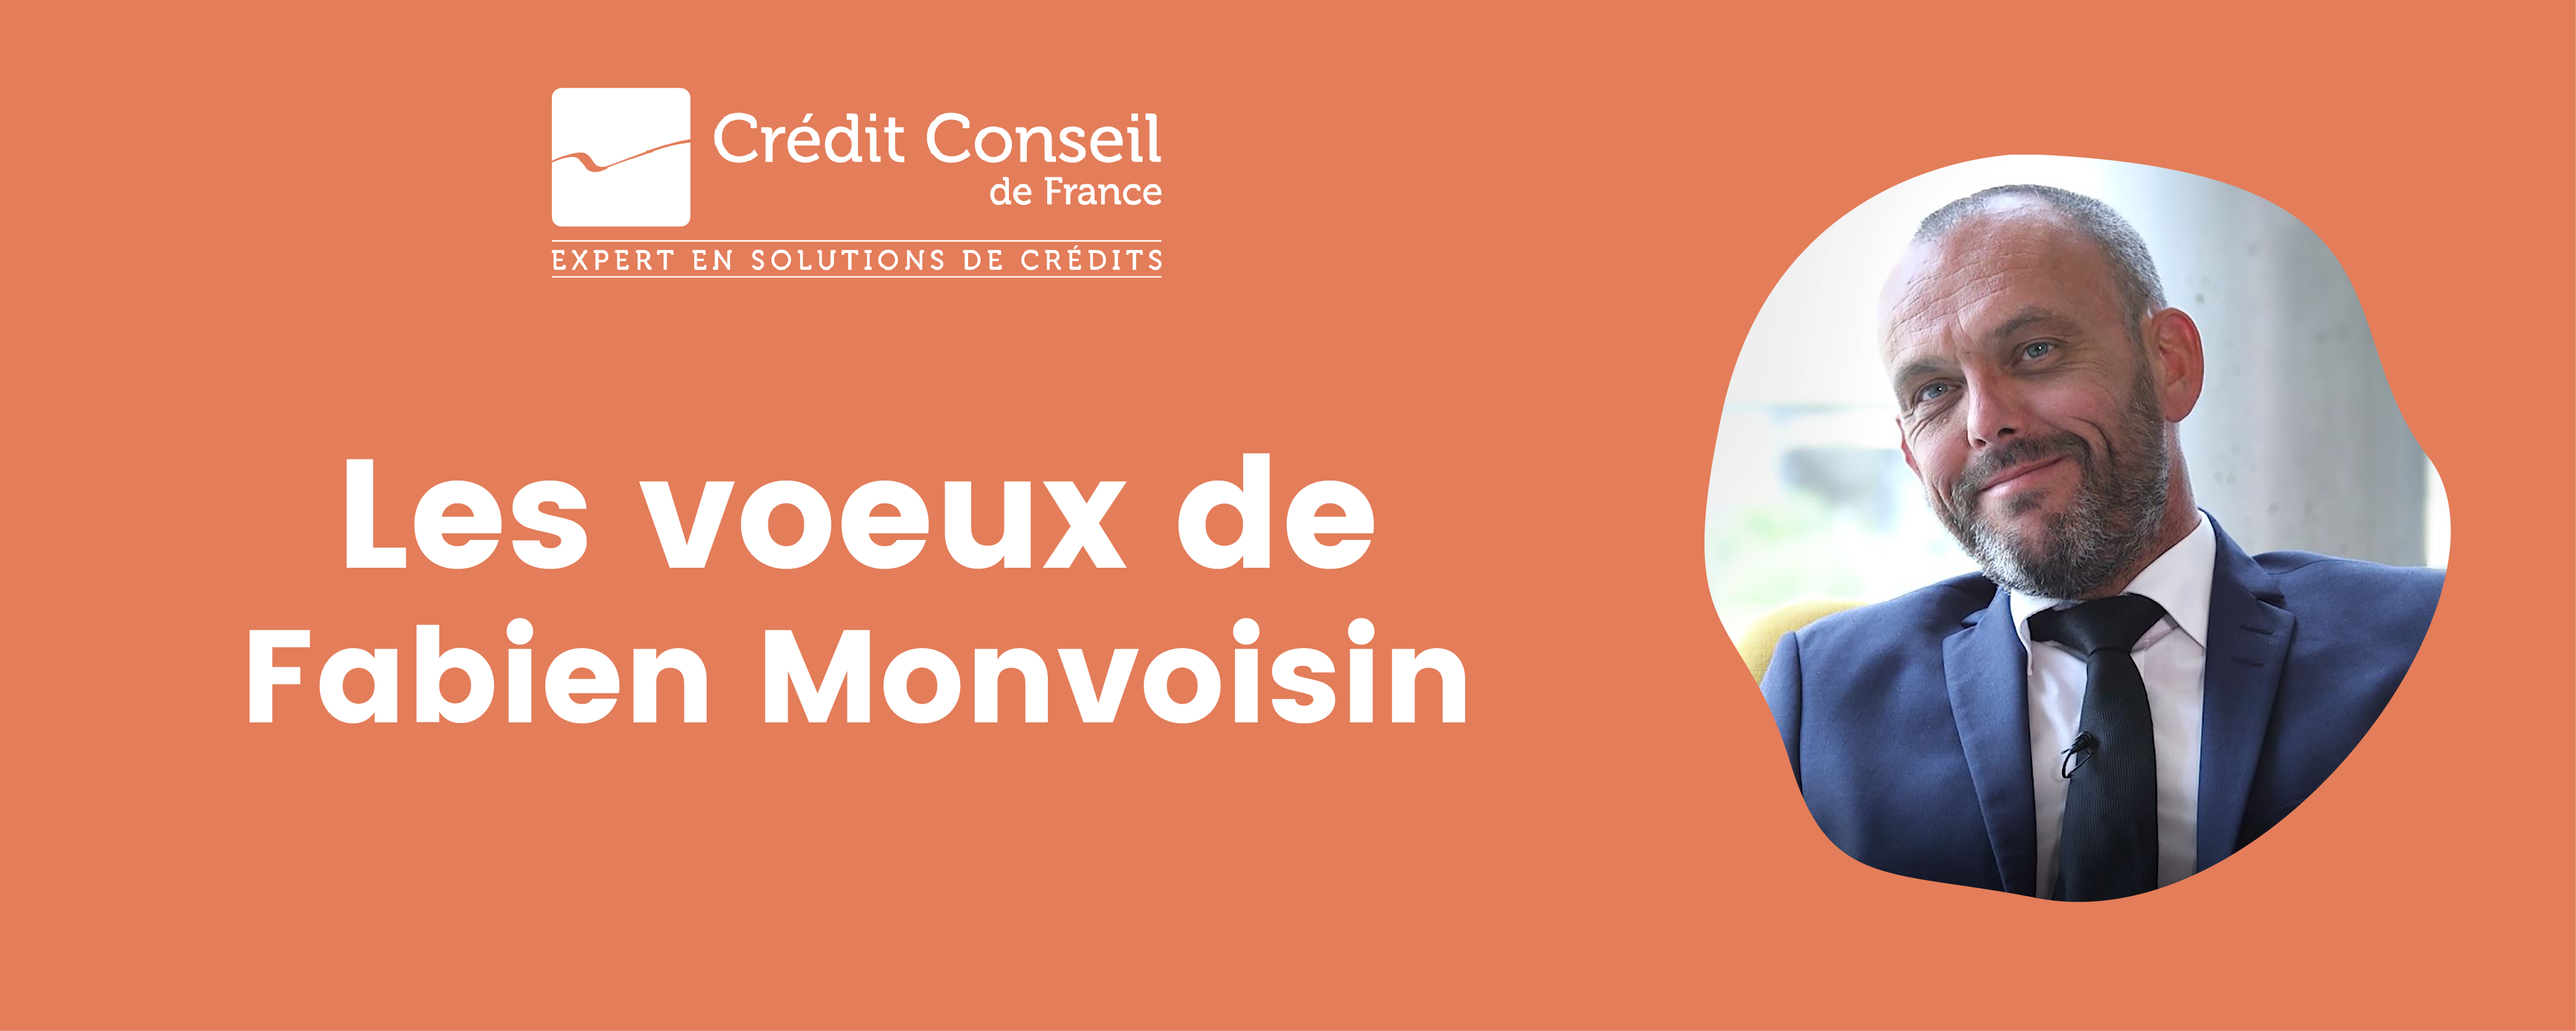 Les voeux de Fabien Monvoisin, PDG Crédit Conseil de France